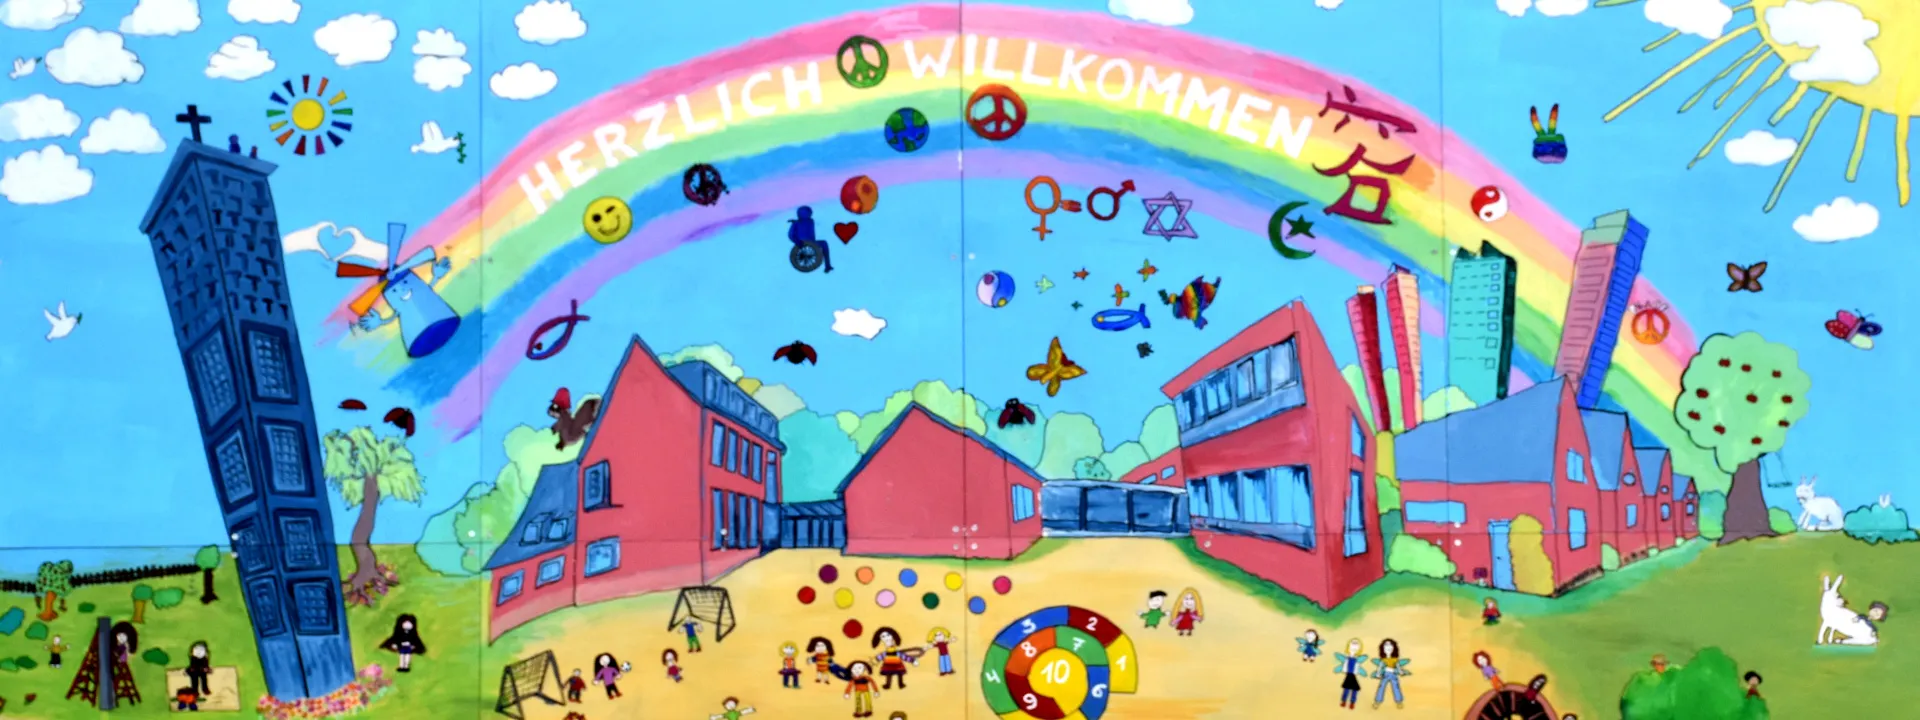 Gemaltes Kinderbild mit Häusern und Regenbogen